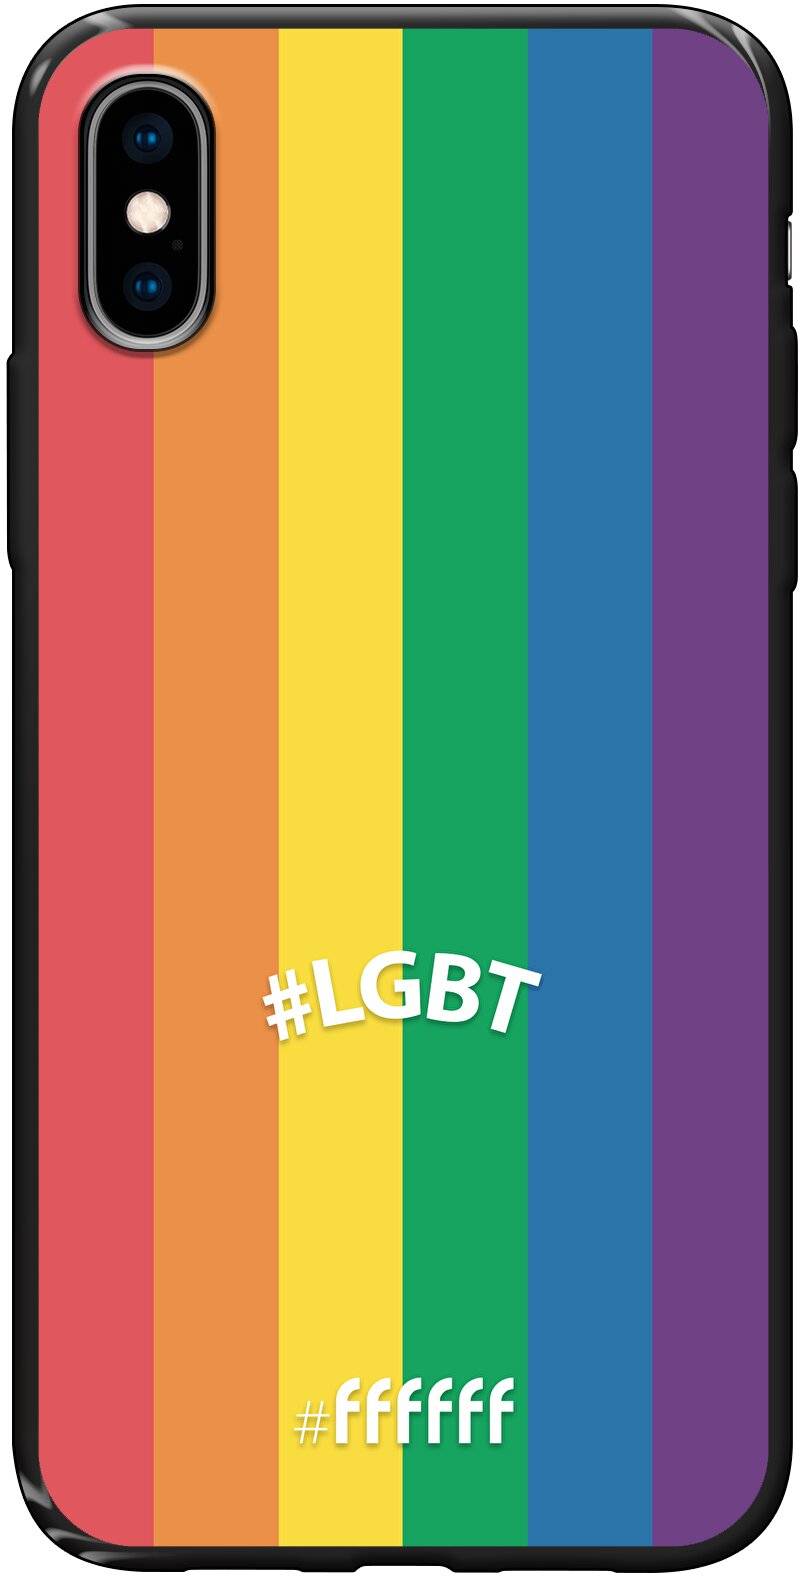 #LGBT - #LGBT iPhone X